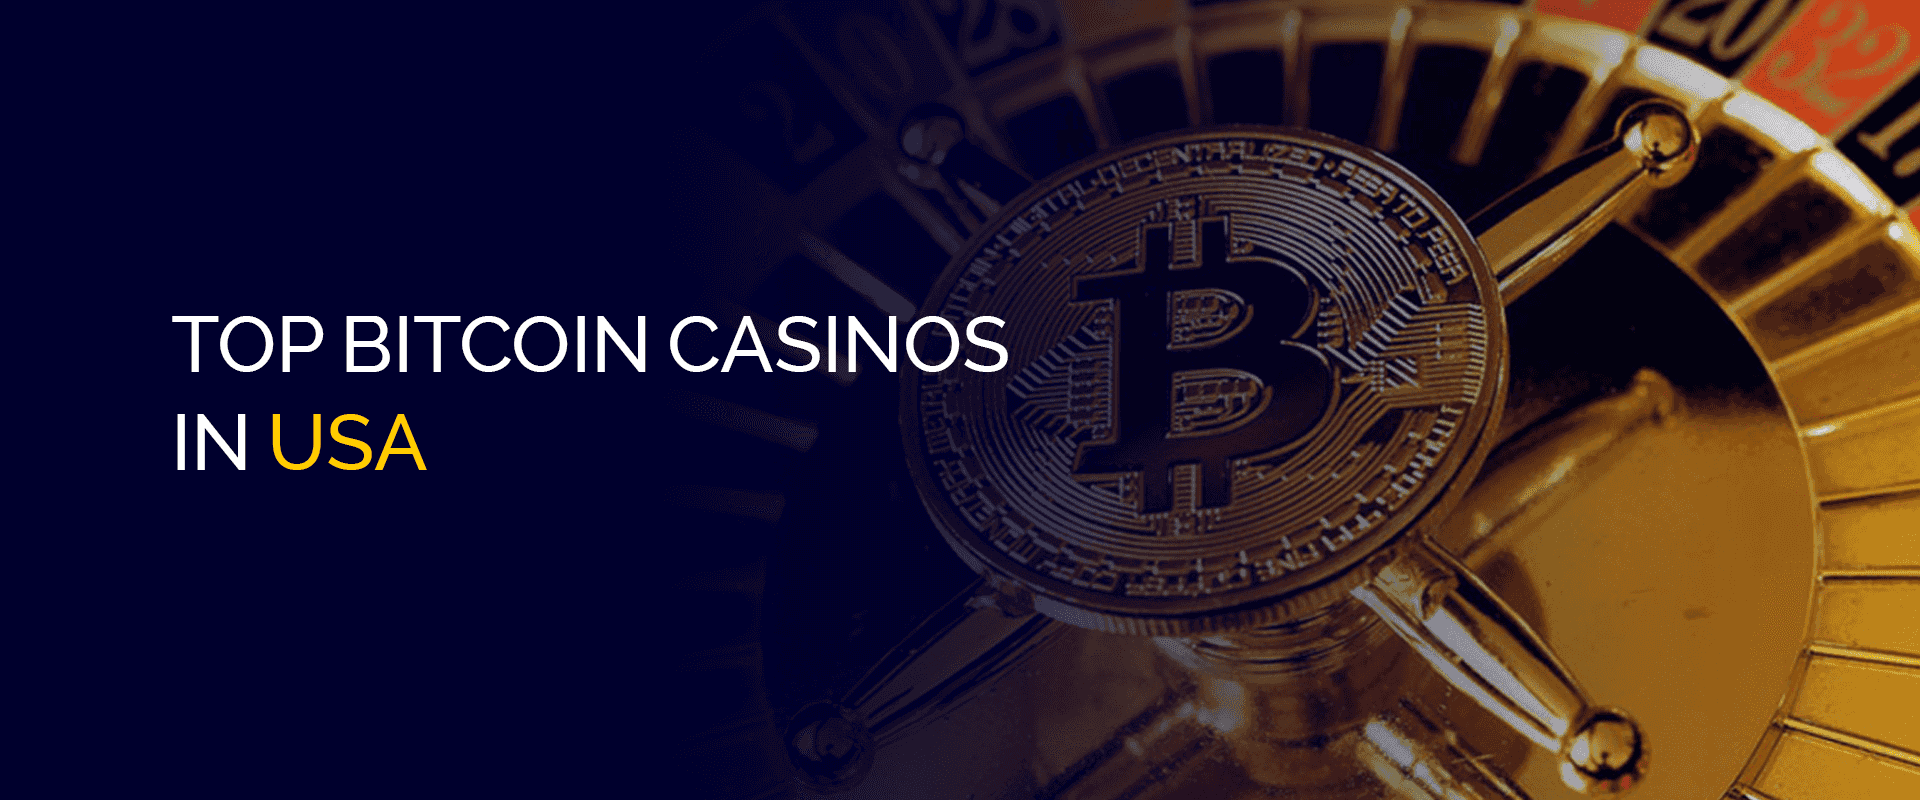 Top Bitcoin Casinos in USA